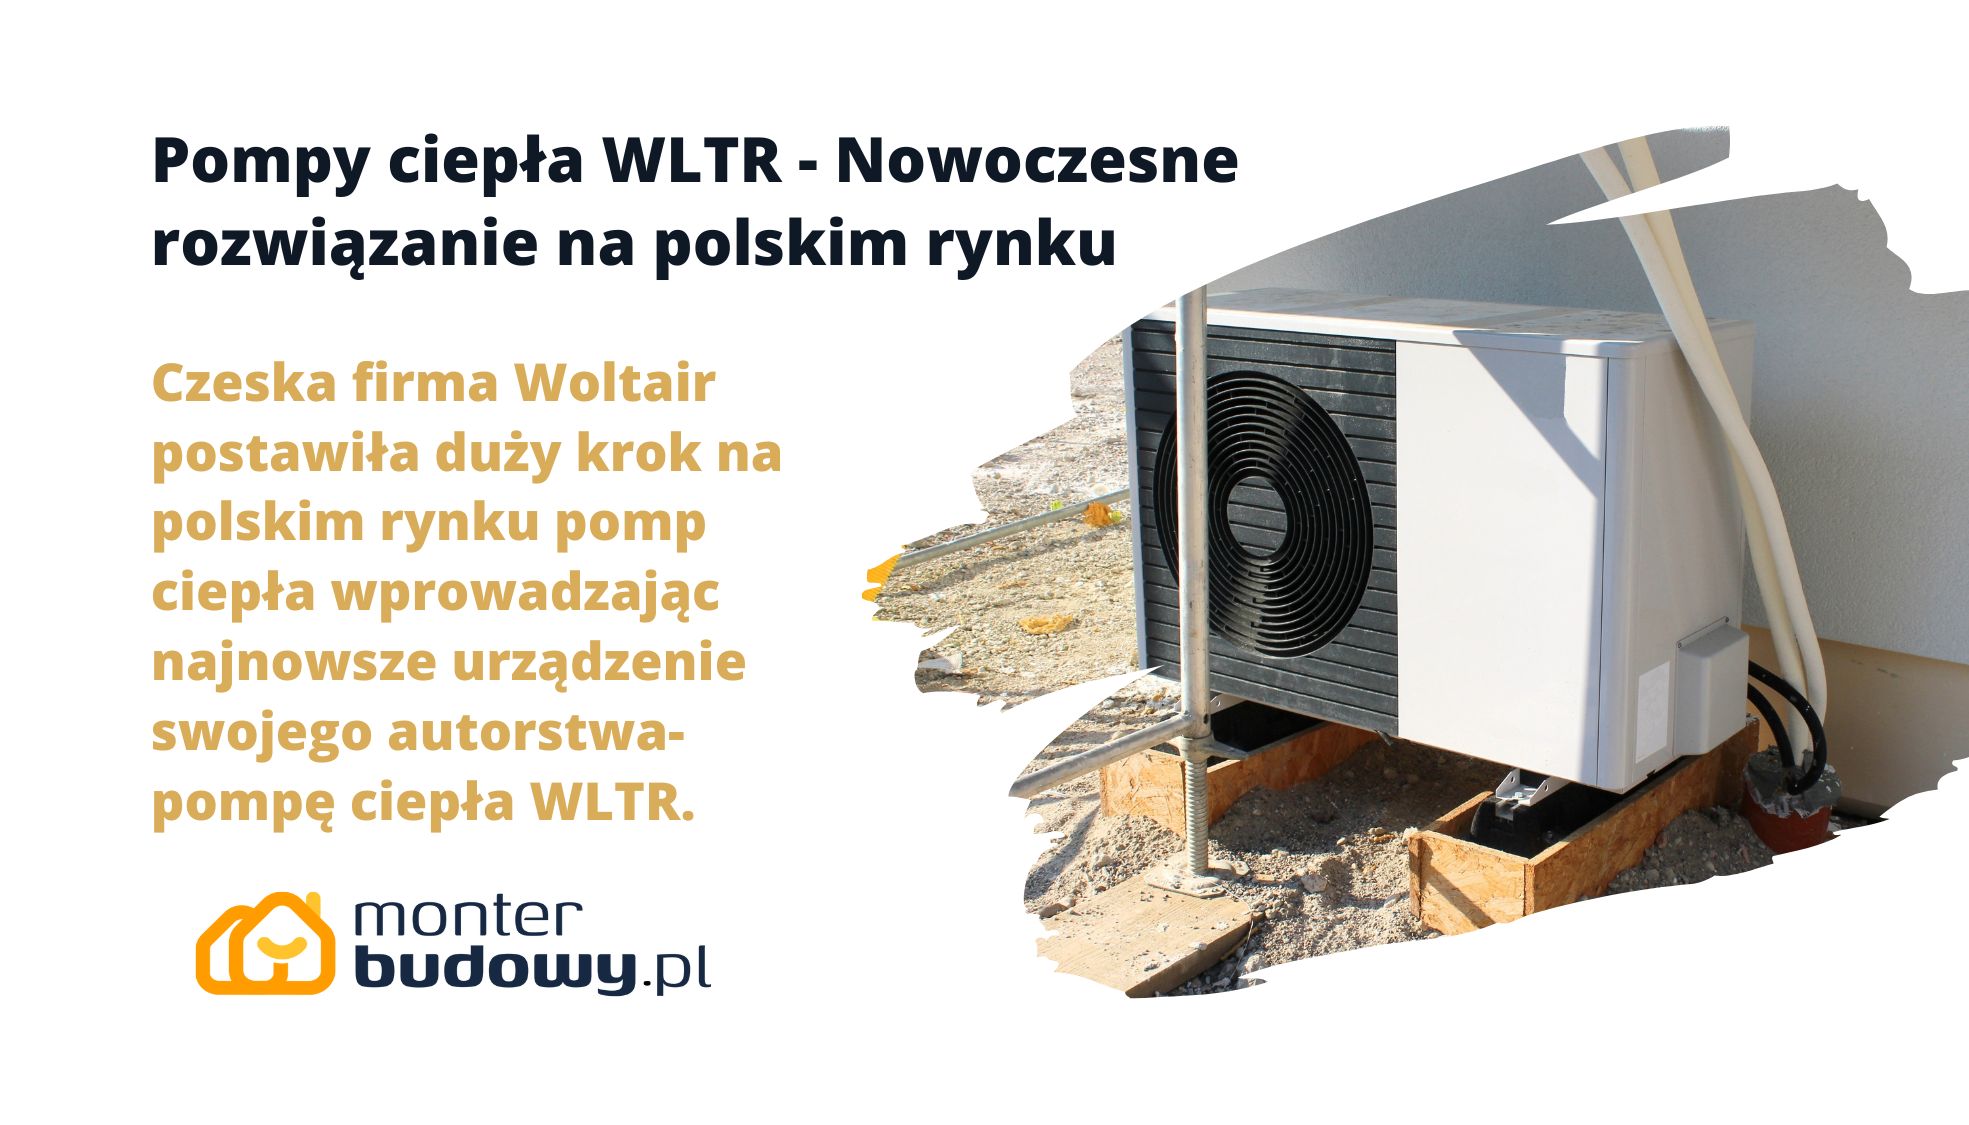 Pompy ciepła WLTR - Nowoczesne rozwiązanie na polskim rynku